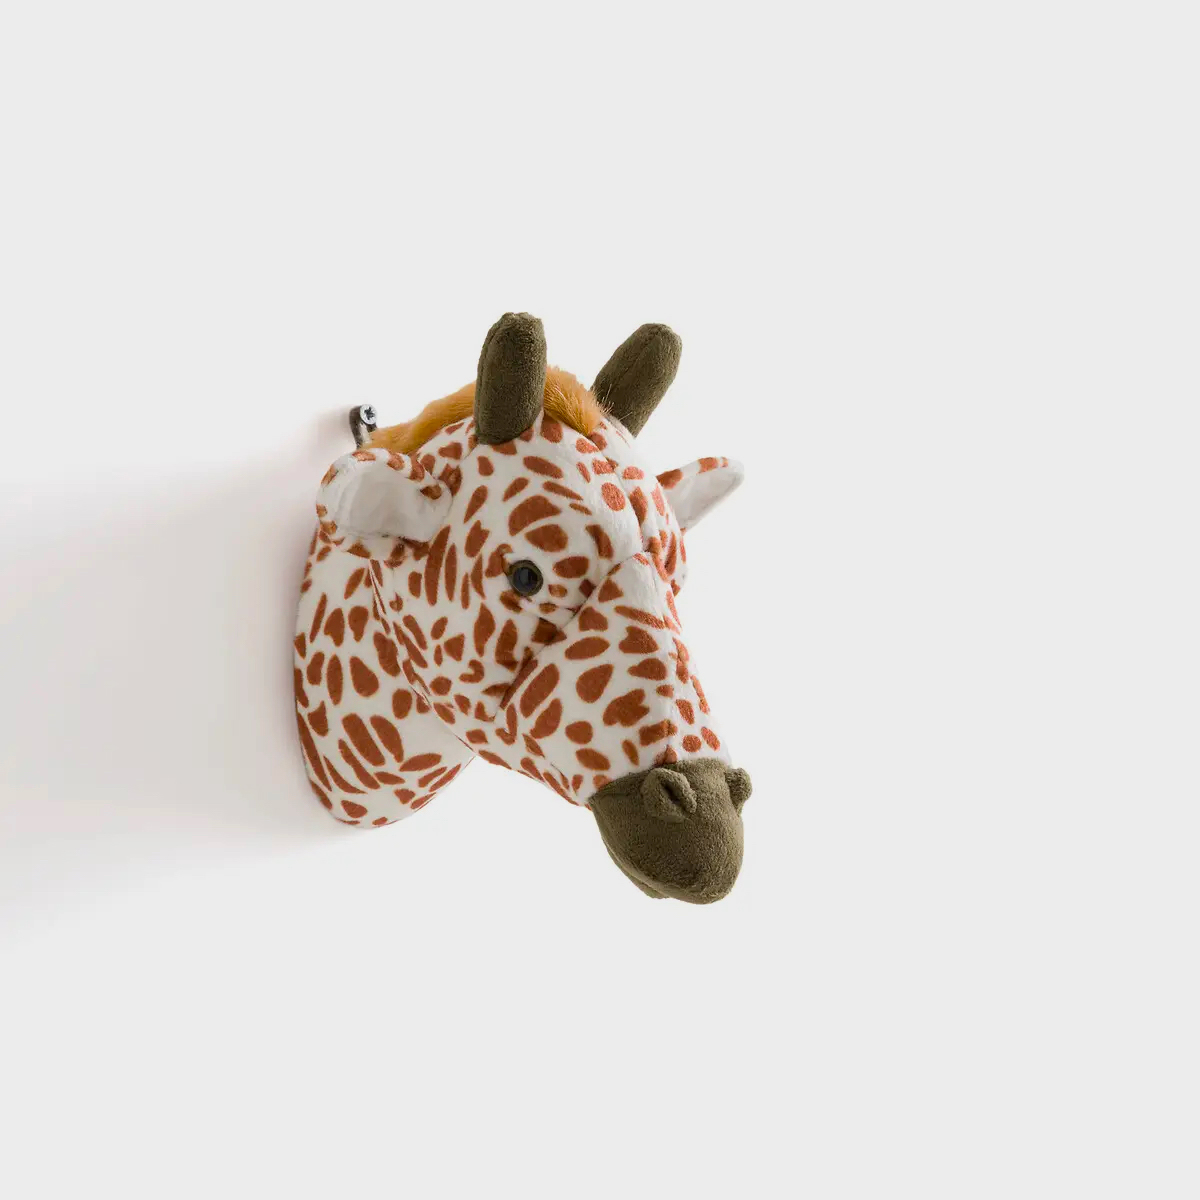 Deze langnek geeft de muur een Afrikaans tintje. Geef je deze giraf voor in de babykamer als kraamcadeau, dan scoor je geheid punten. 